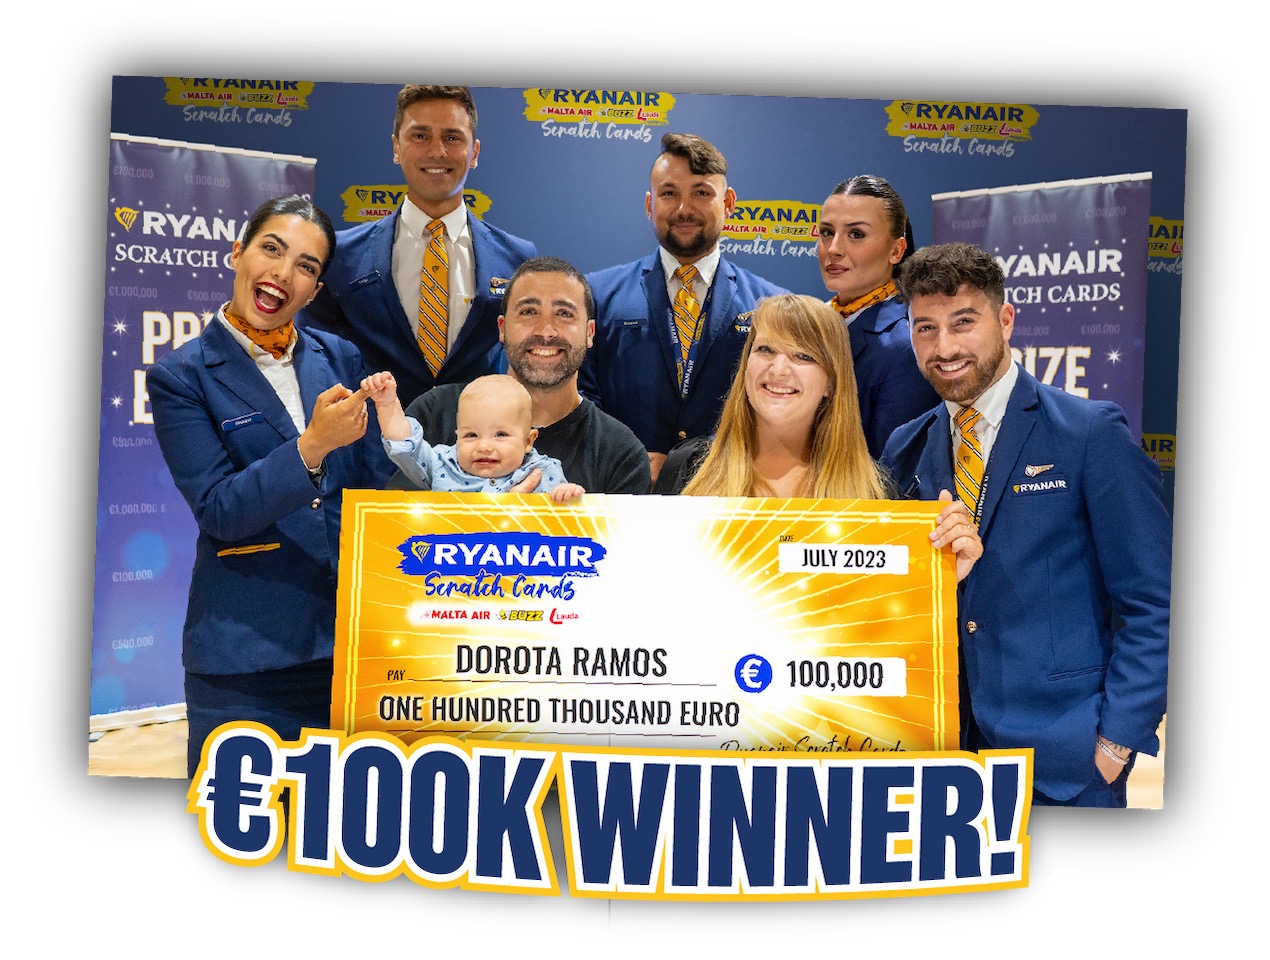 Dorota Ramos €100K winner!